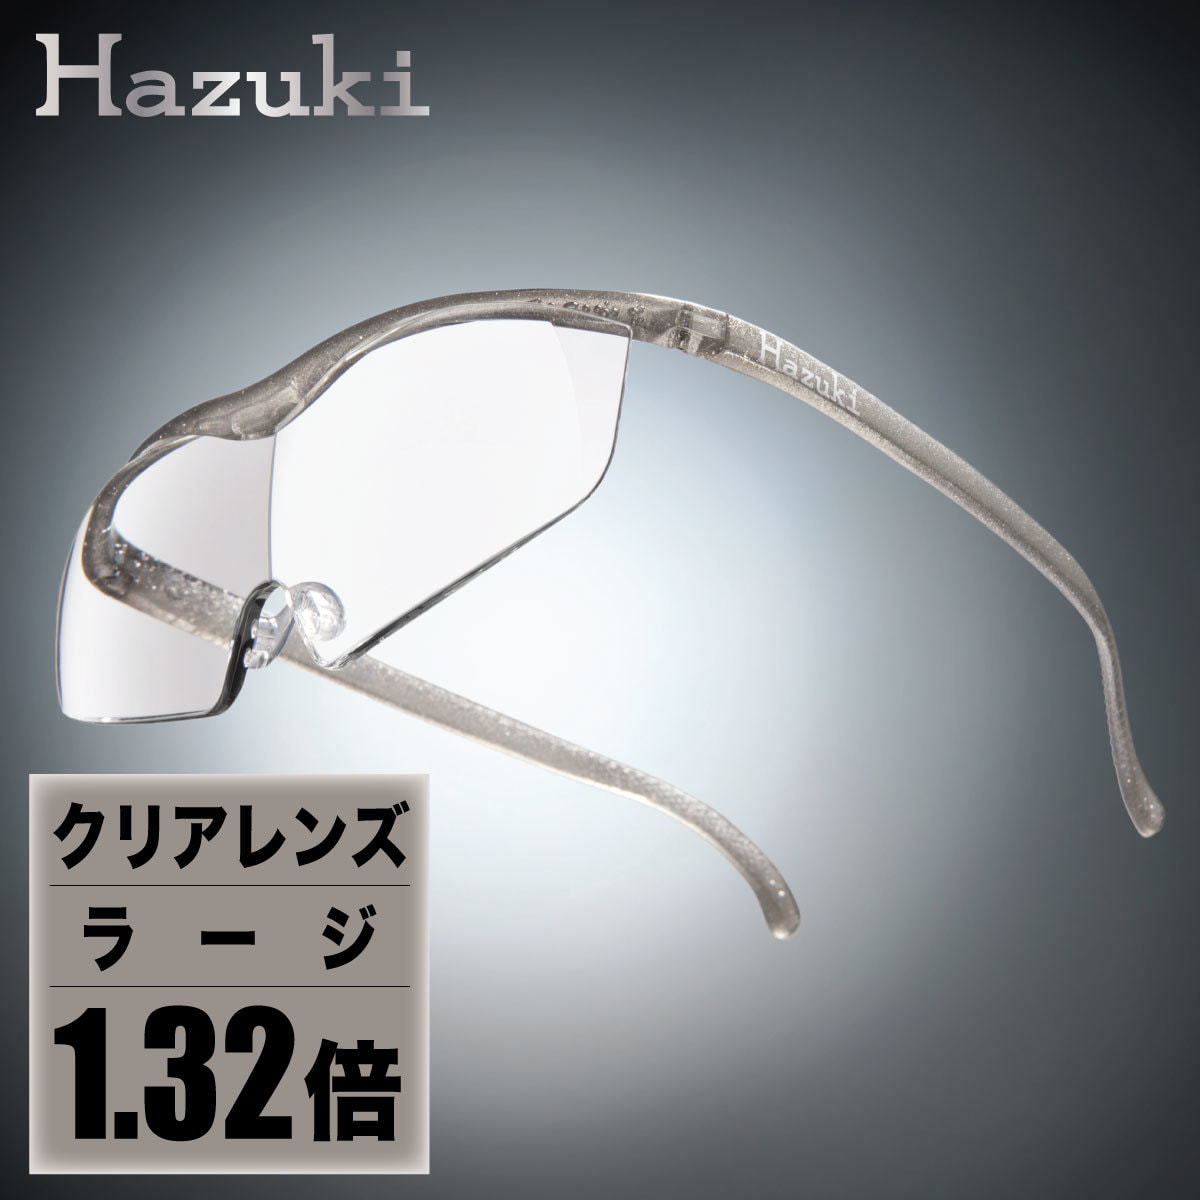 Hazuki ハズキルーペ ラージ 1.32倍 クリアレンズ 黒サンプル品